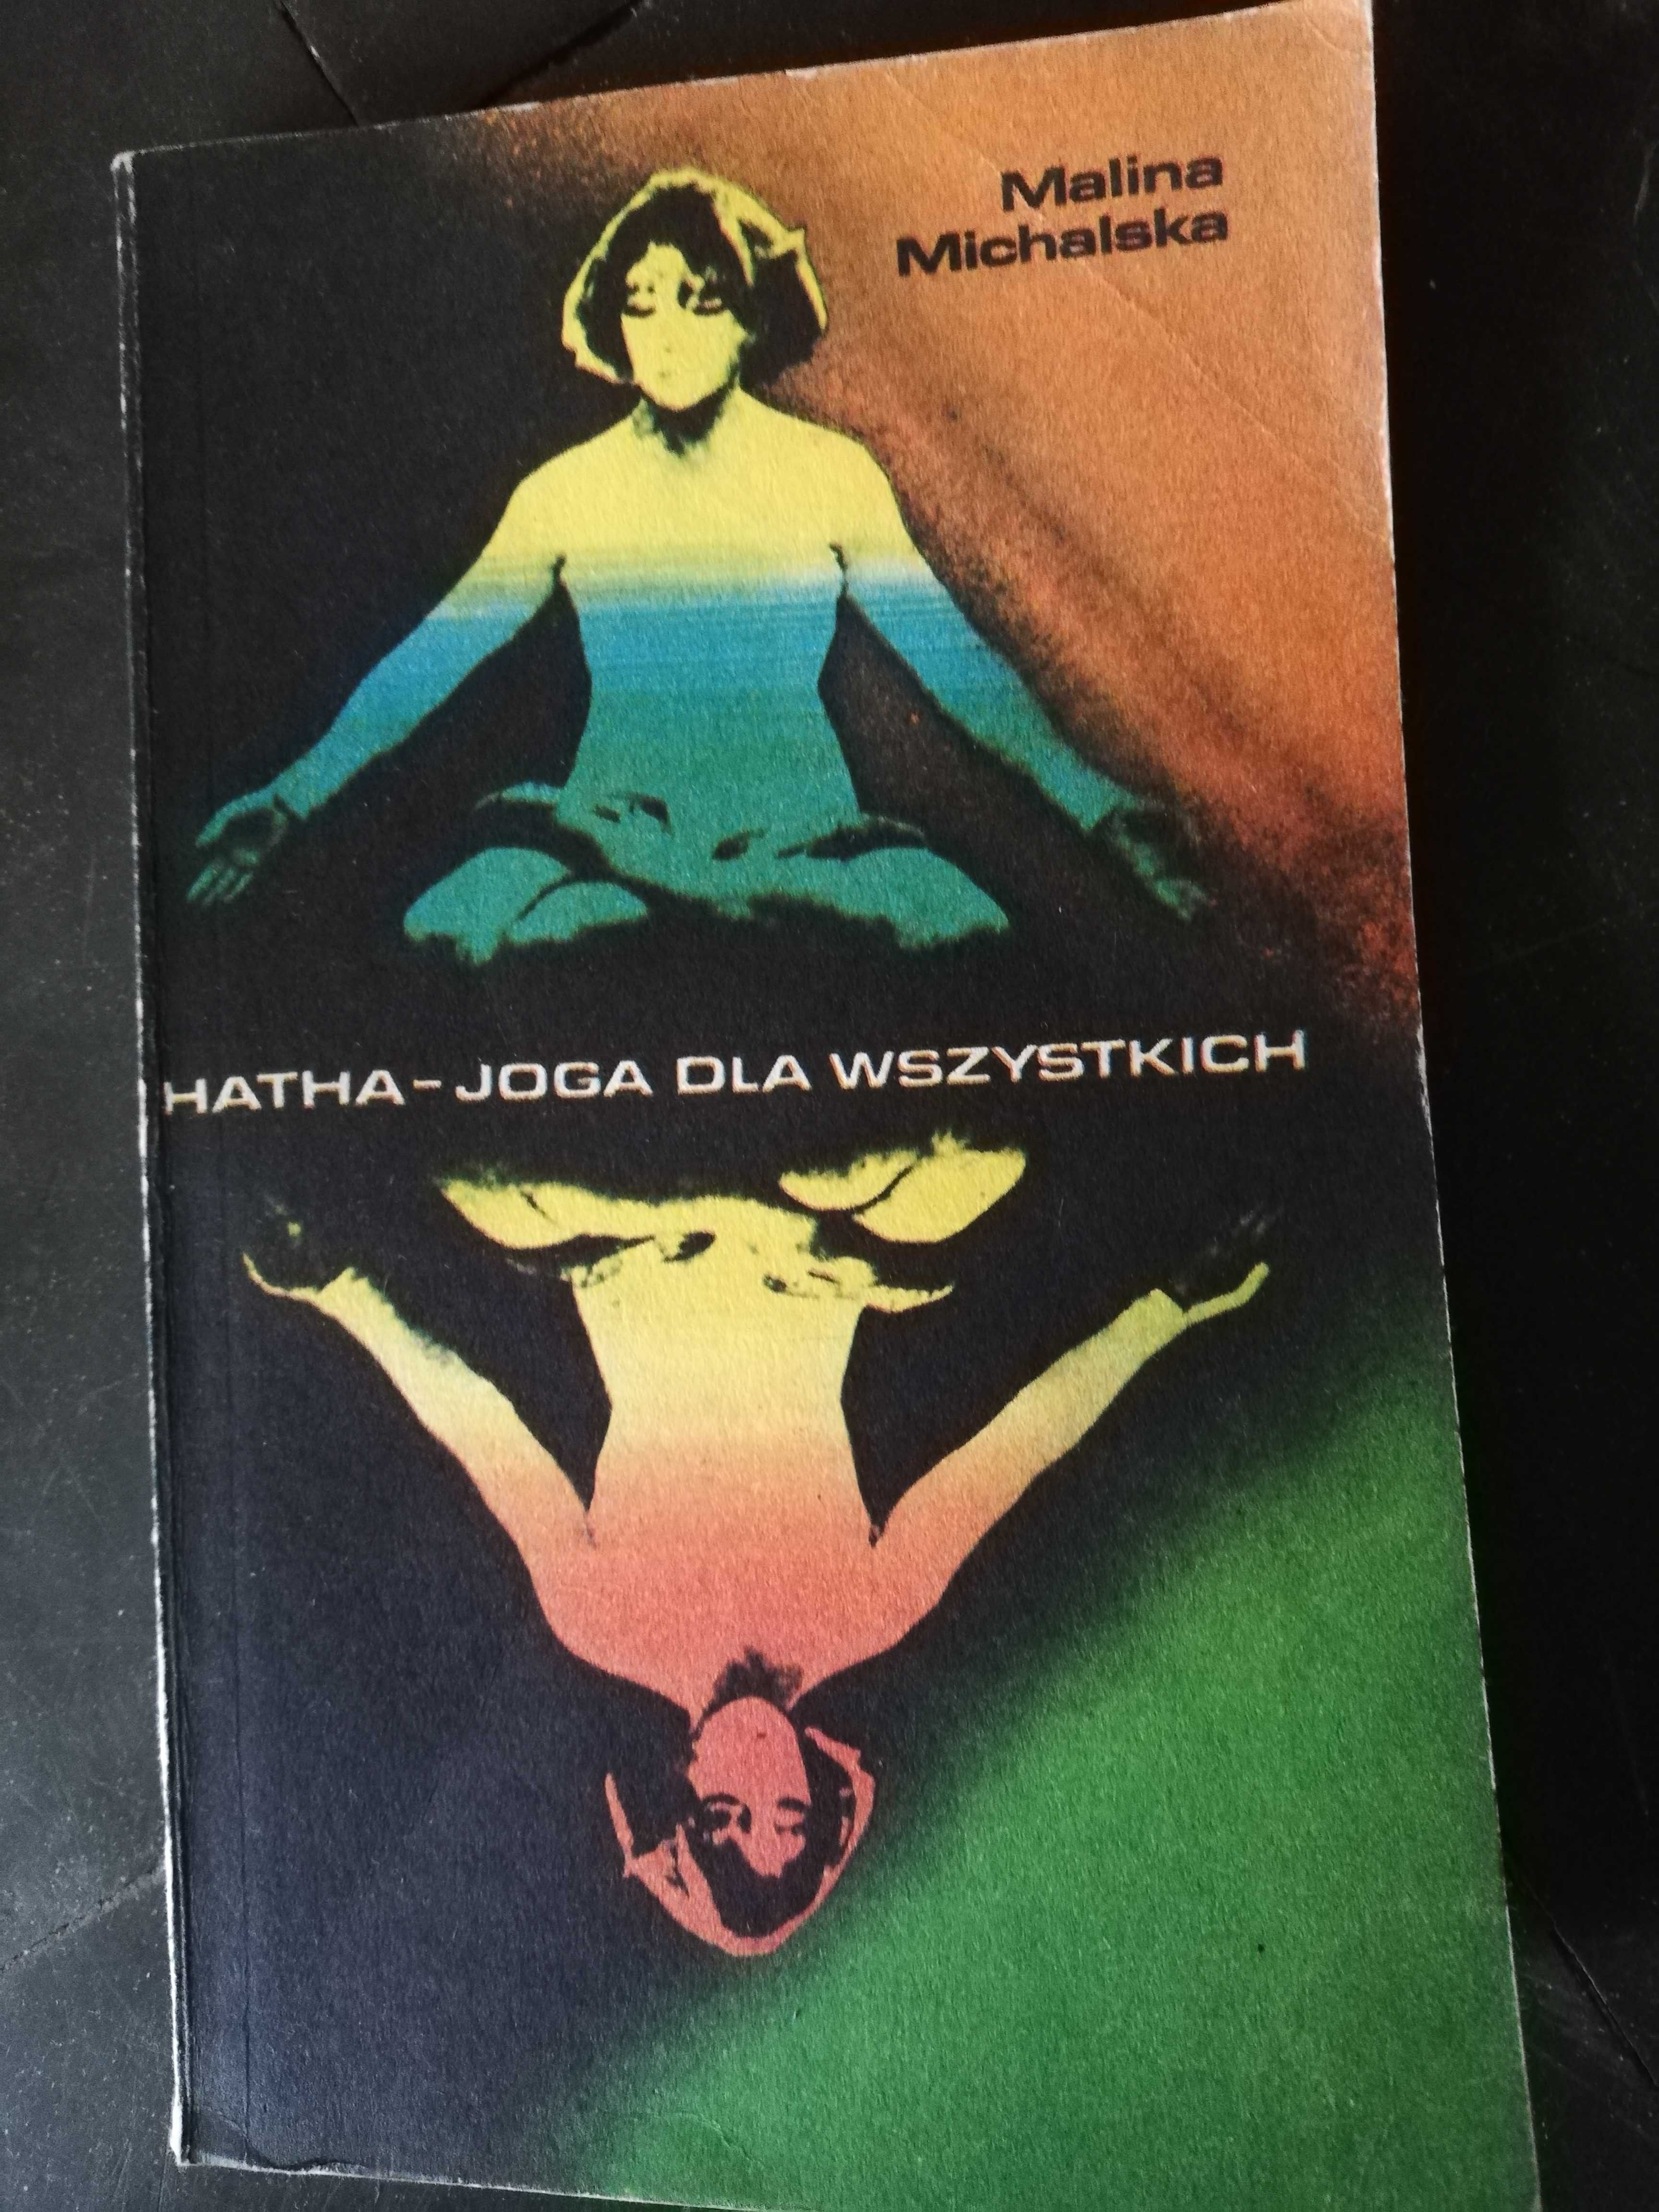 Hatha-joga dla wszystkich - M. Michalska